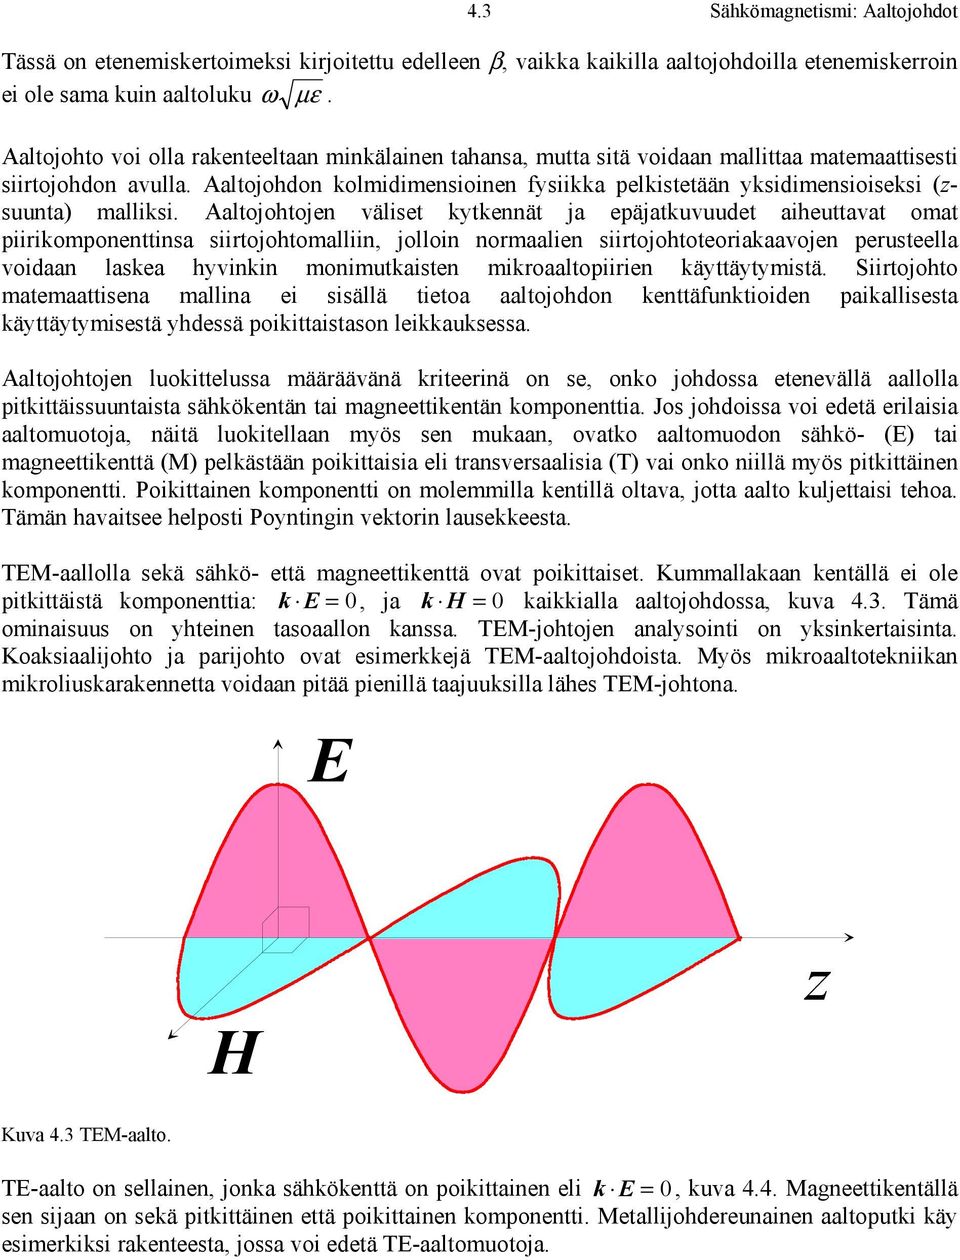 Aaltojohdon kolidiensioinen fysiikka pelkistetään yksidiensioiseksi (zsuunta alliksi.